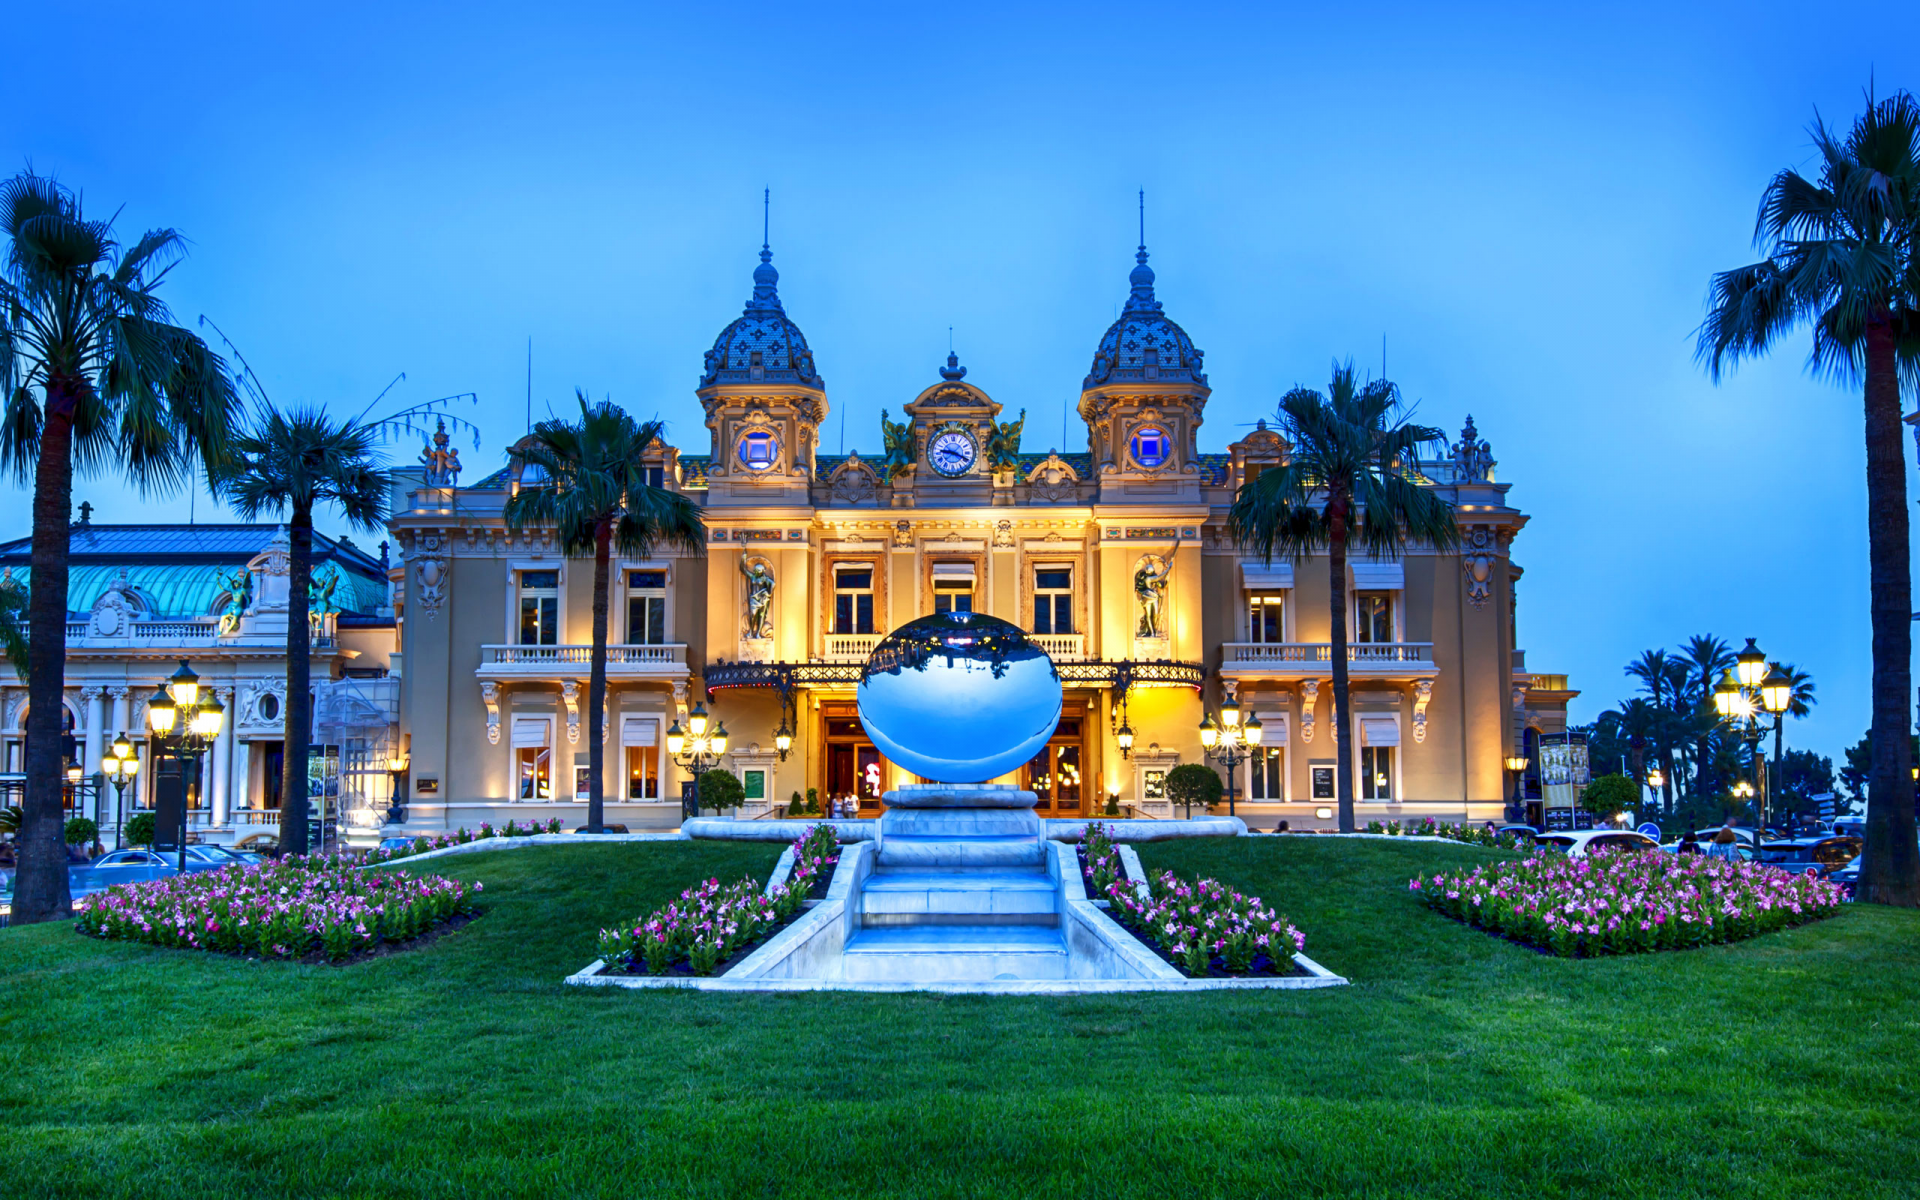 Казино Монте Карло, Монте Карло, Княжество Монако, город, Grand Casino Monte Carlo, Monte Carlo, Principaute de Monaco, casino